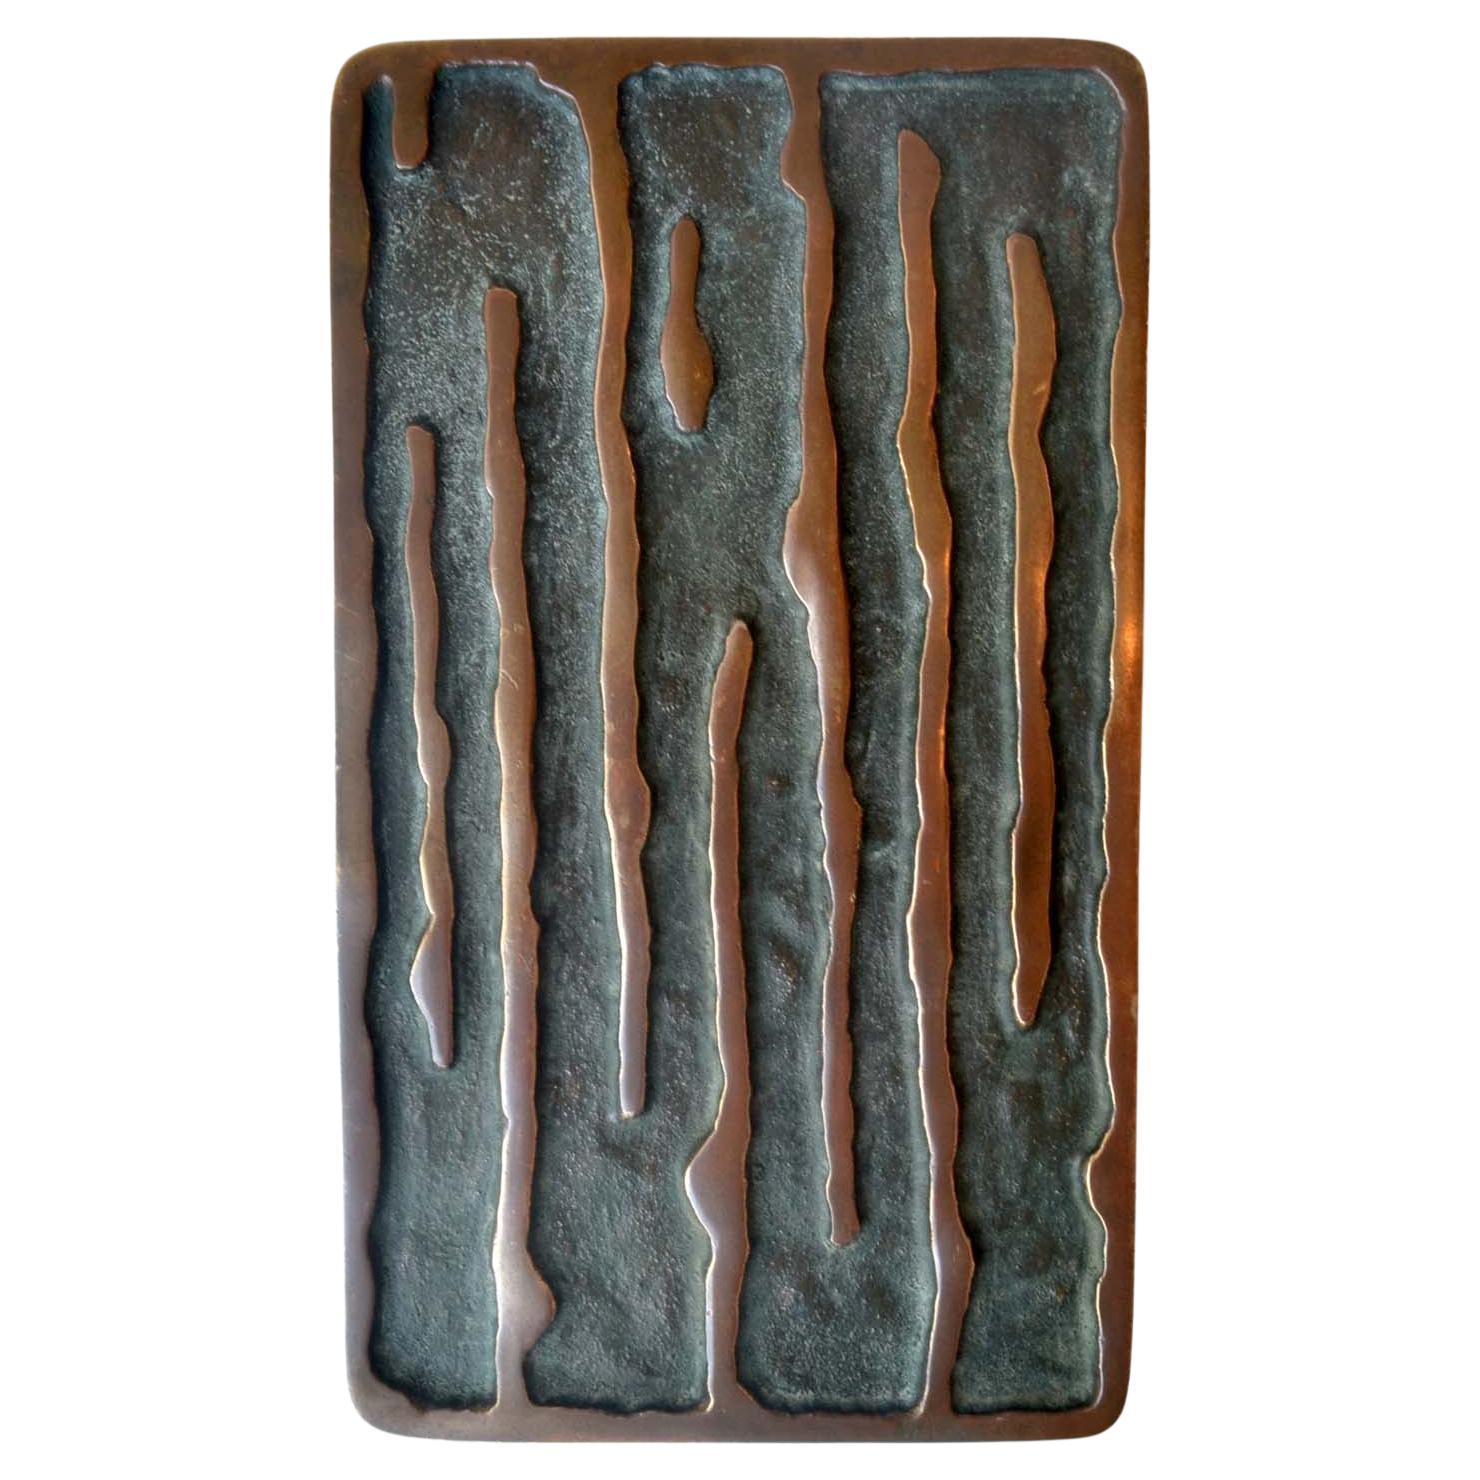 Satz von zwei rechteckigen Türgriffen aus Bronze mit vertikalem Wellenrelief, europäisch 1970er Jahre. Ihr Relief mit der ursprünglichen Patina verleiht einem Haus echte Persönlichkeit. Diese identischen Griffe können innen oder außen an einem Paar